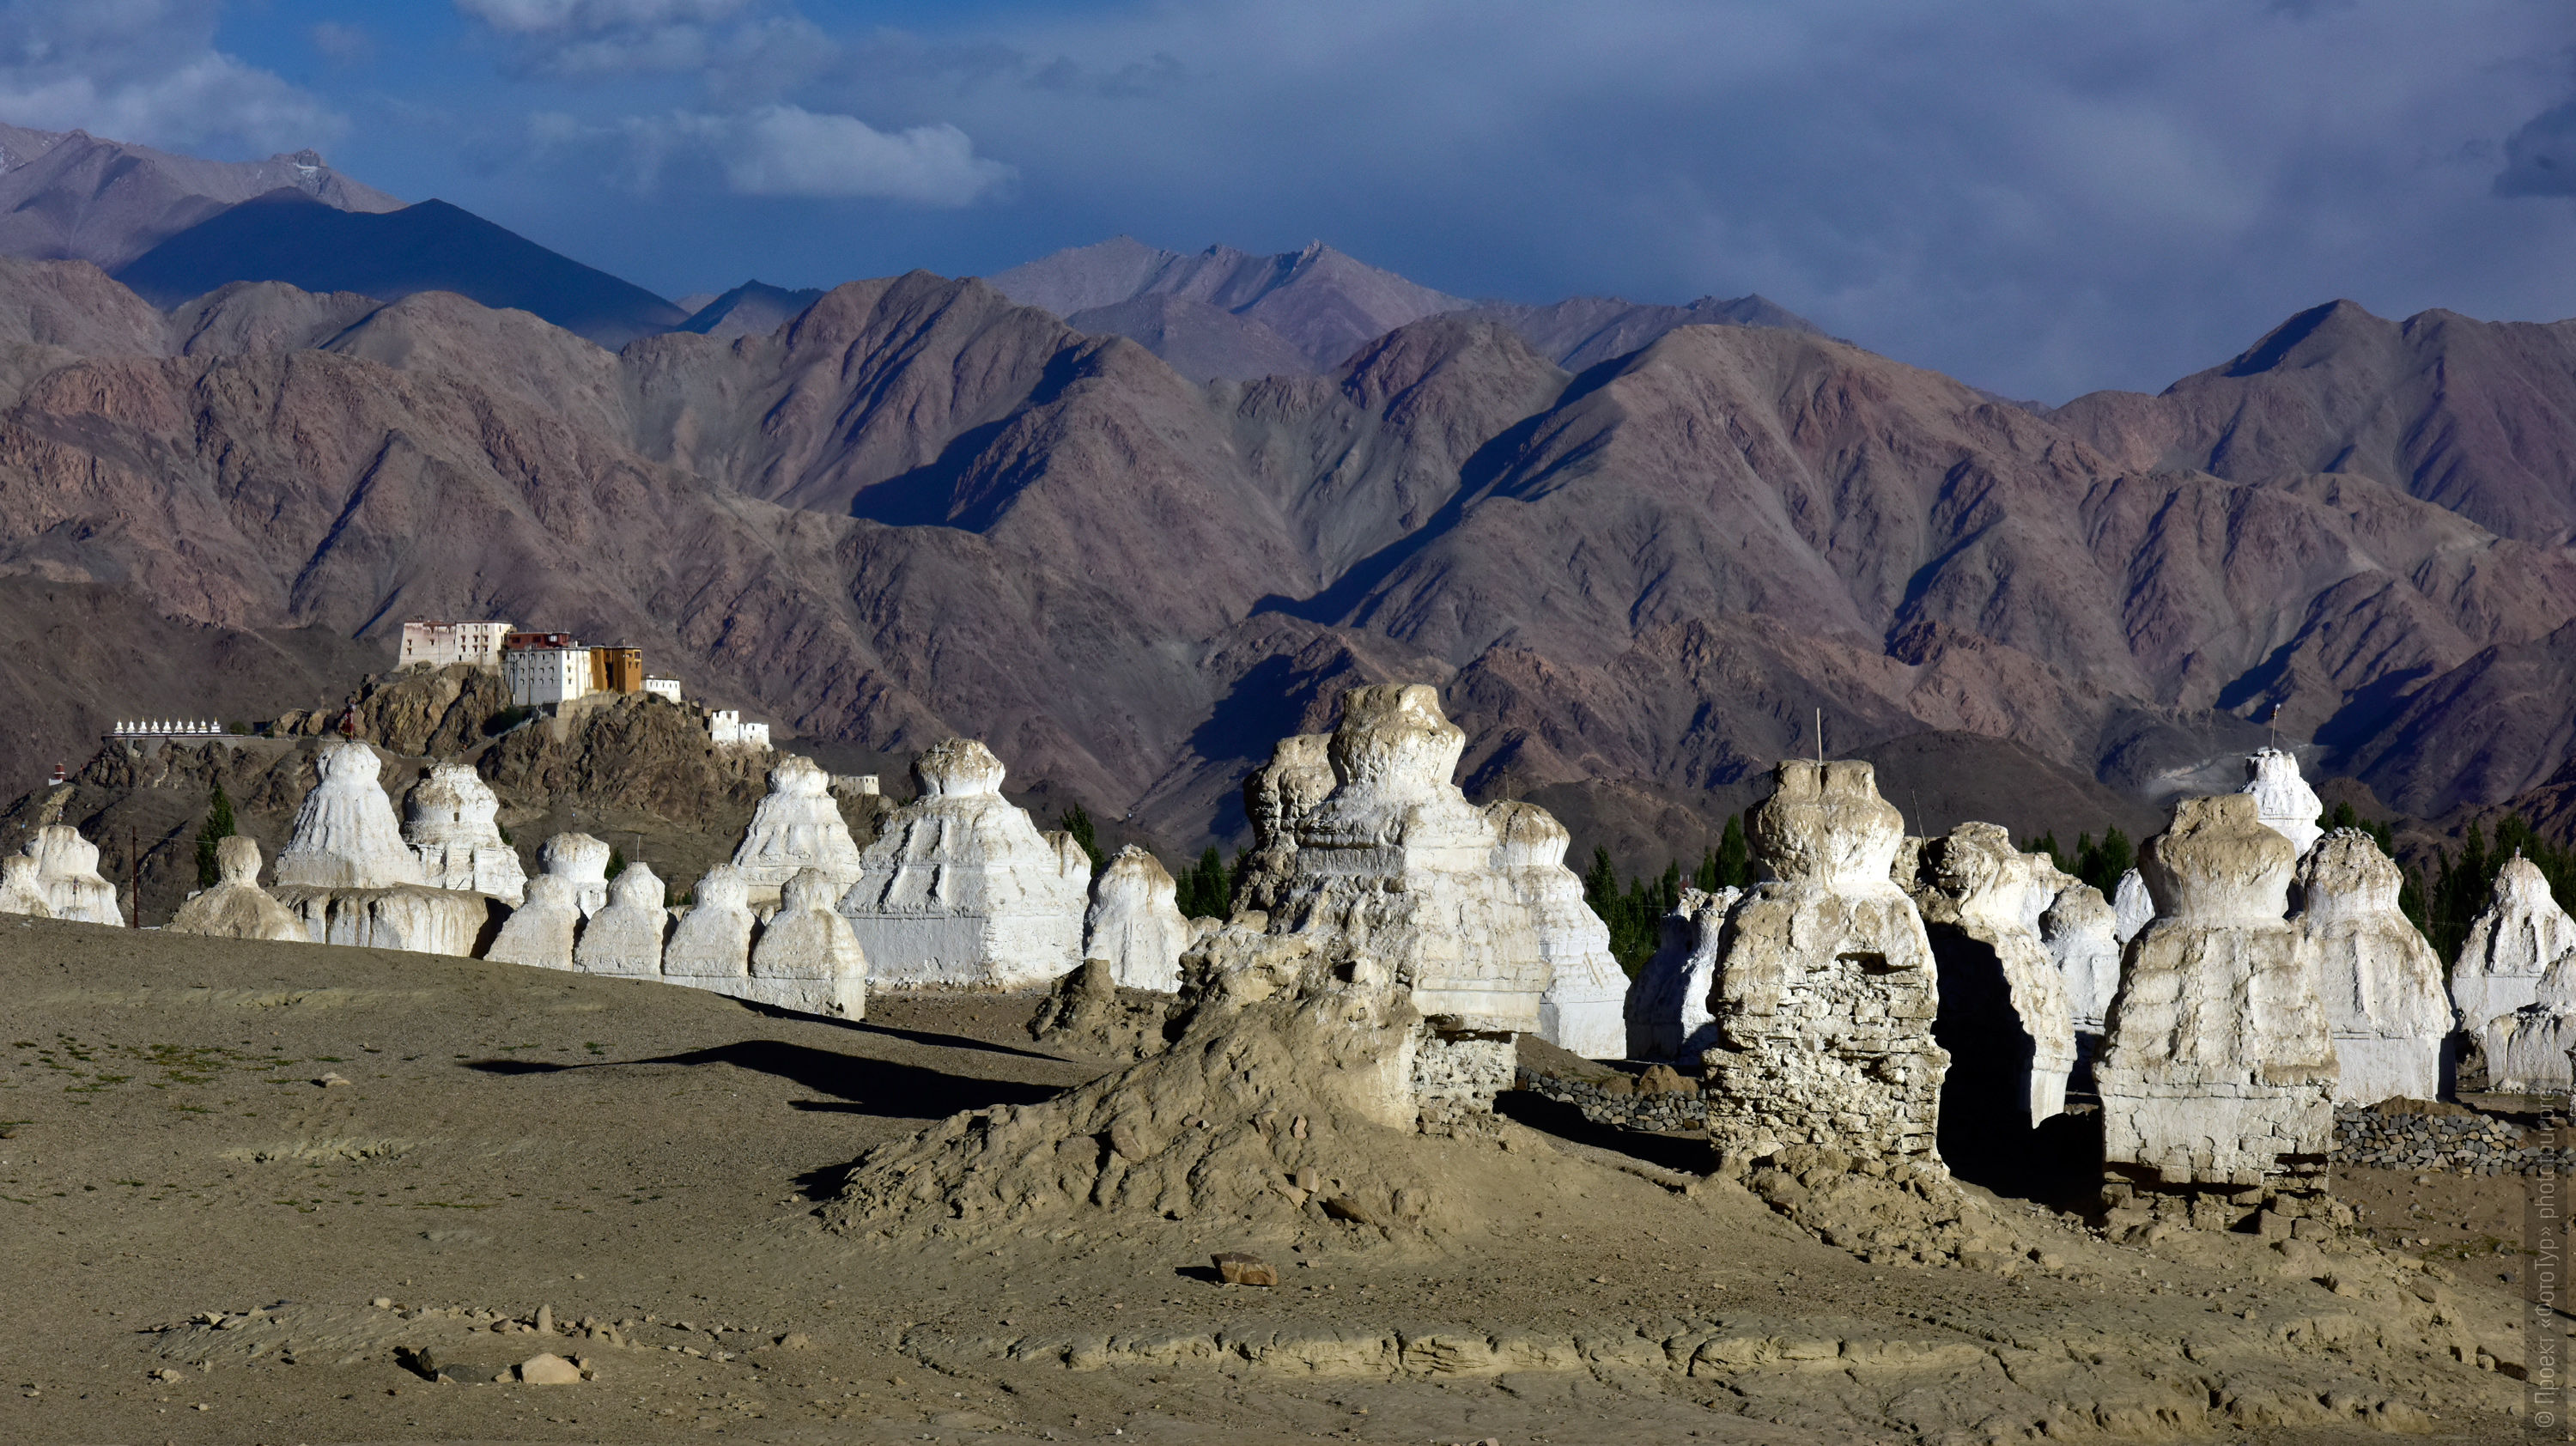 White stupas of Europe and the Tiksi Gonpa monastery, Ladakh womens tour, August 31 - September 14, 2019.